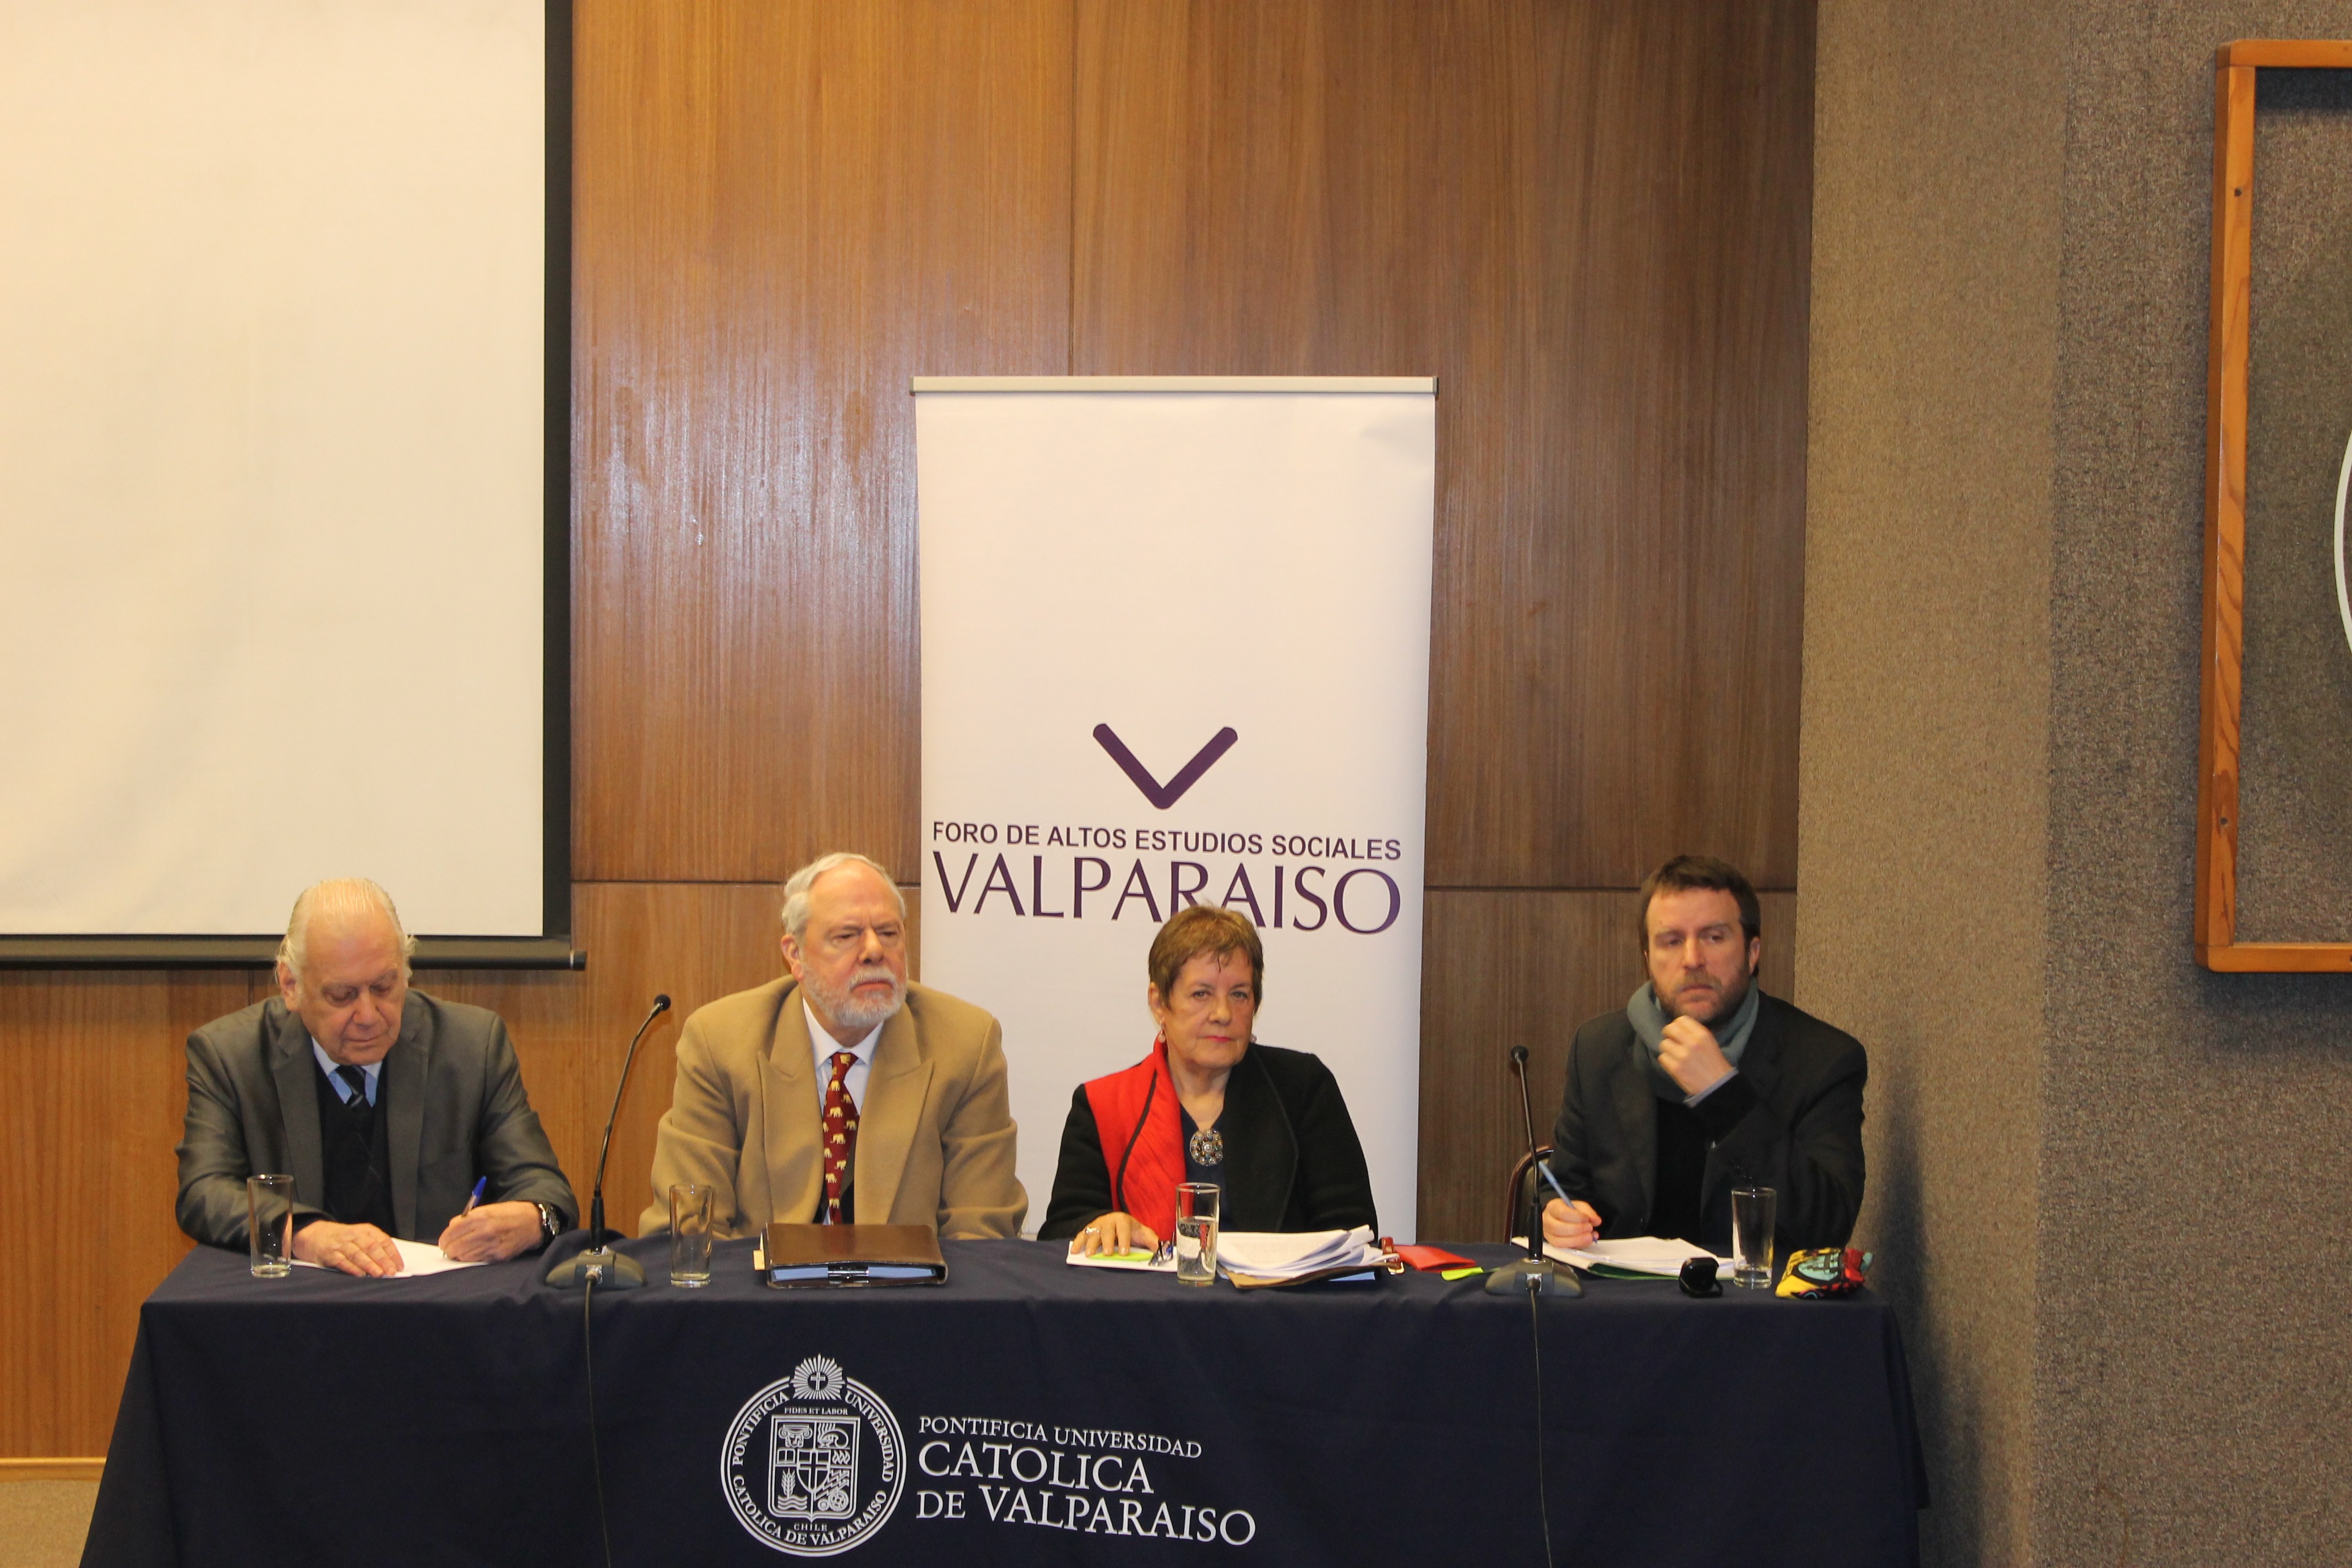 Foro Valparaíso conmemoró sus 15 años de existencia con seminario "Reforma universitaria y universidad del futuro".